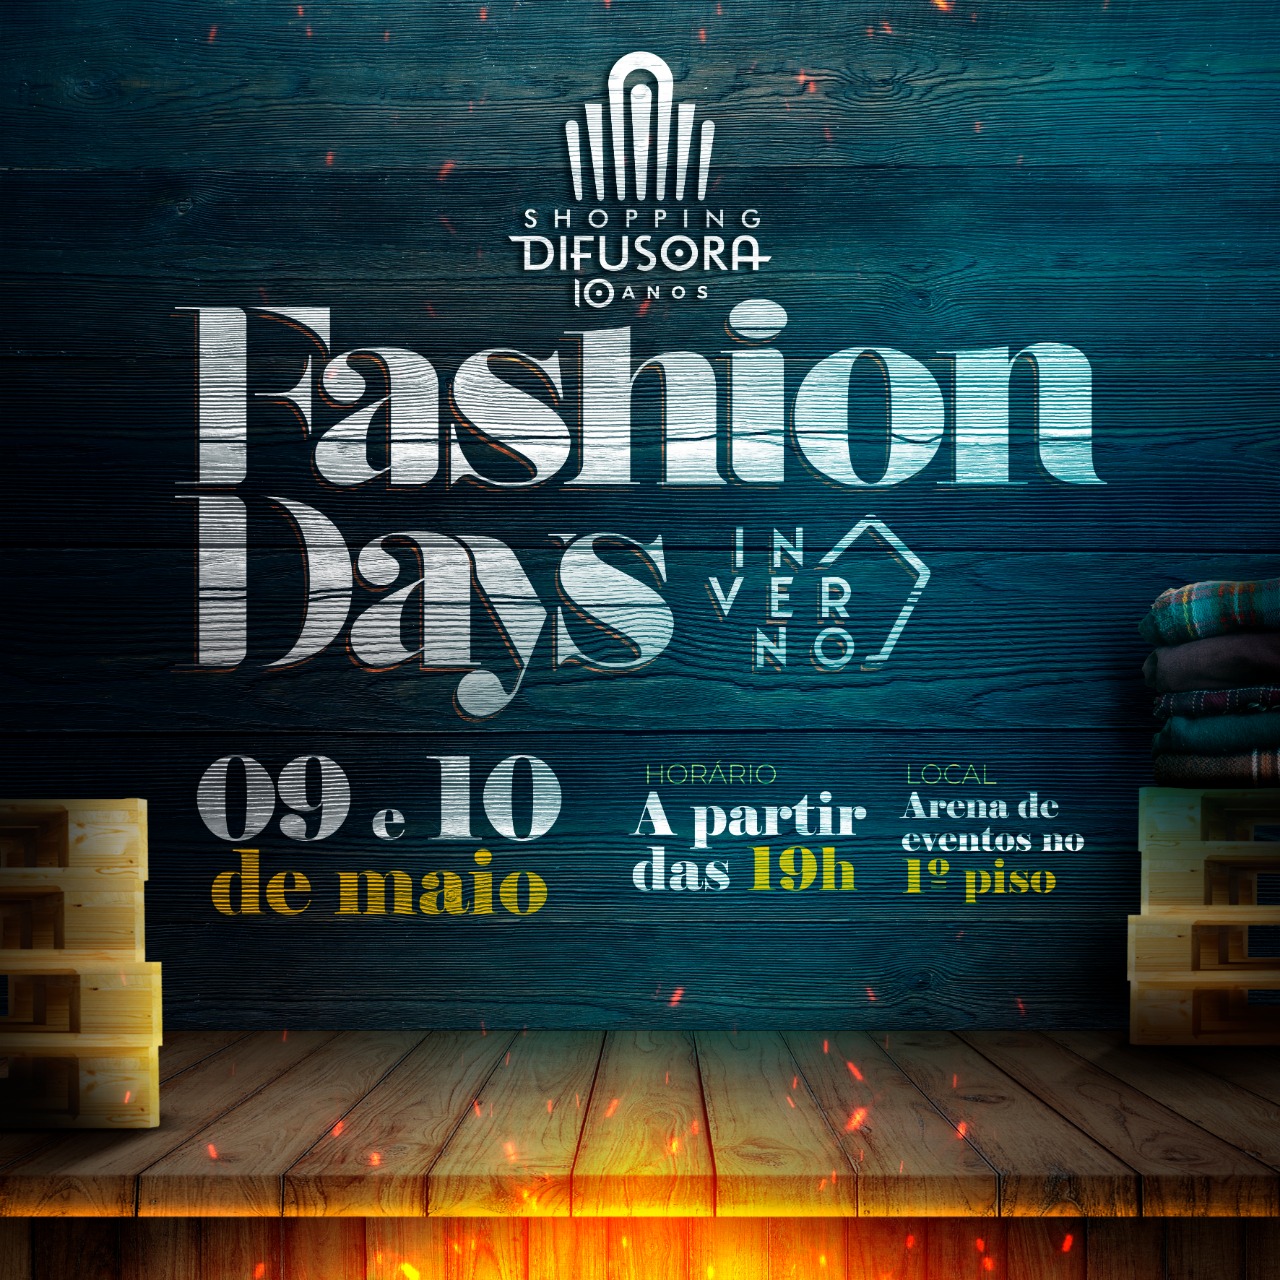 Centro de compras de Caruaru sediará evento de moda inverno